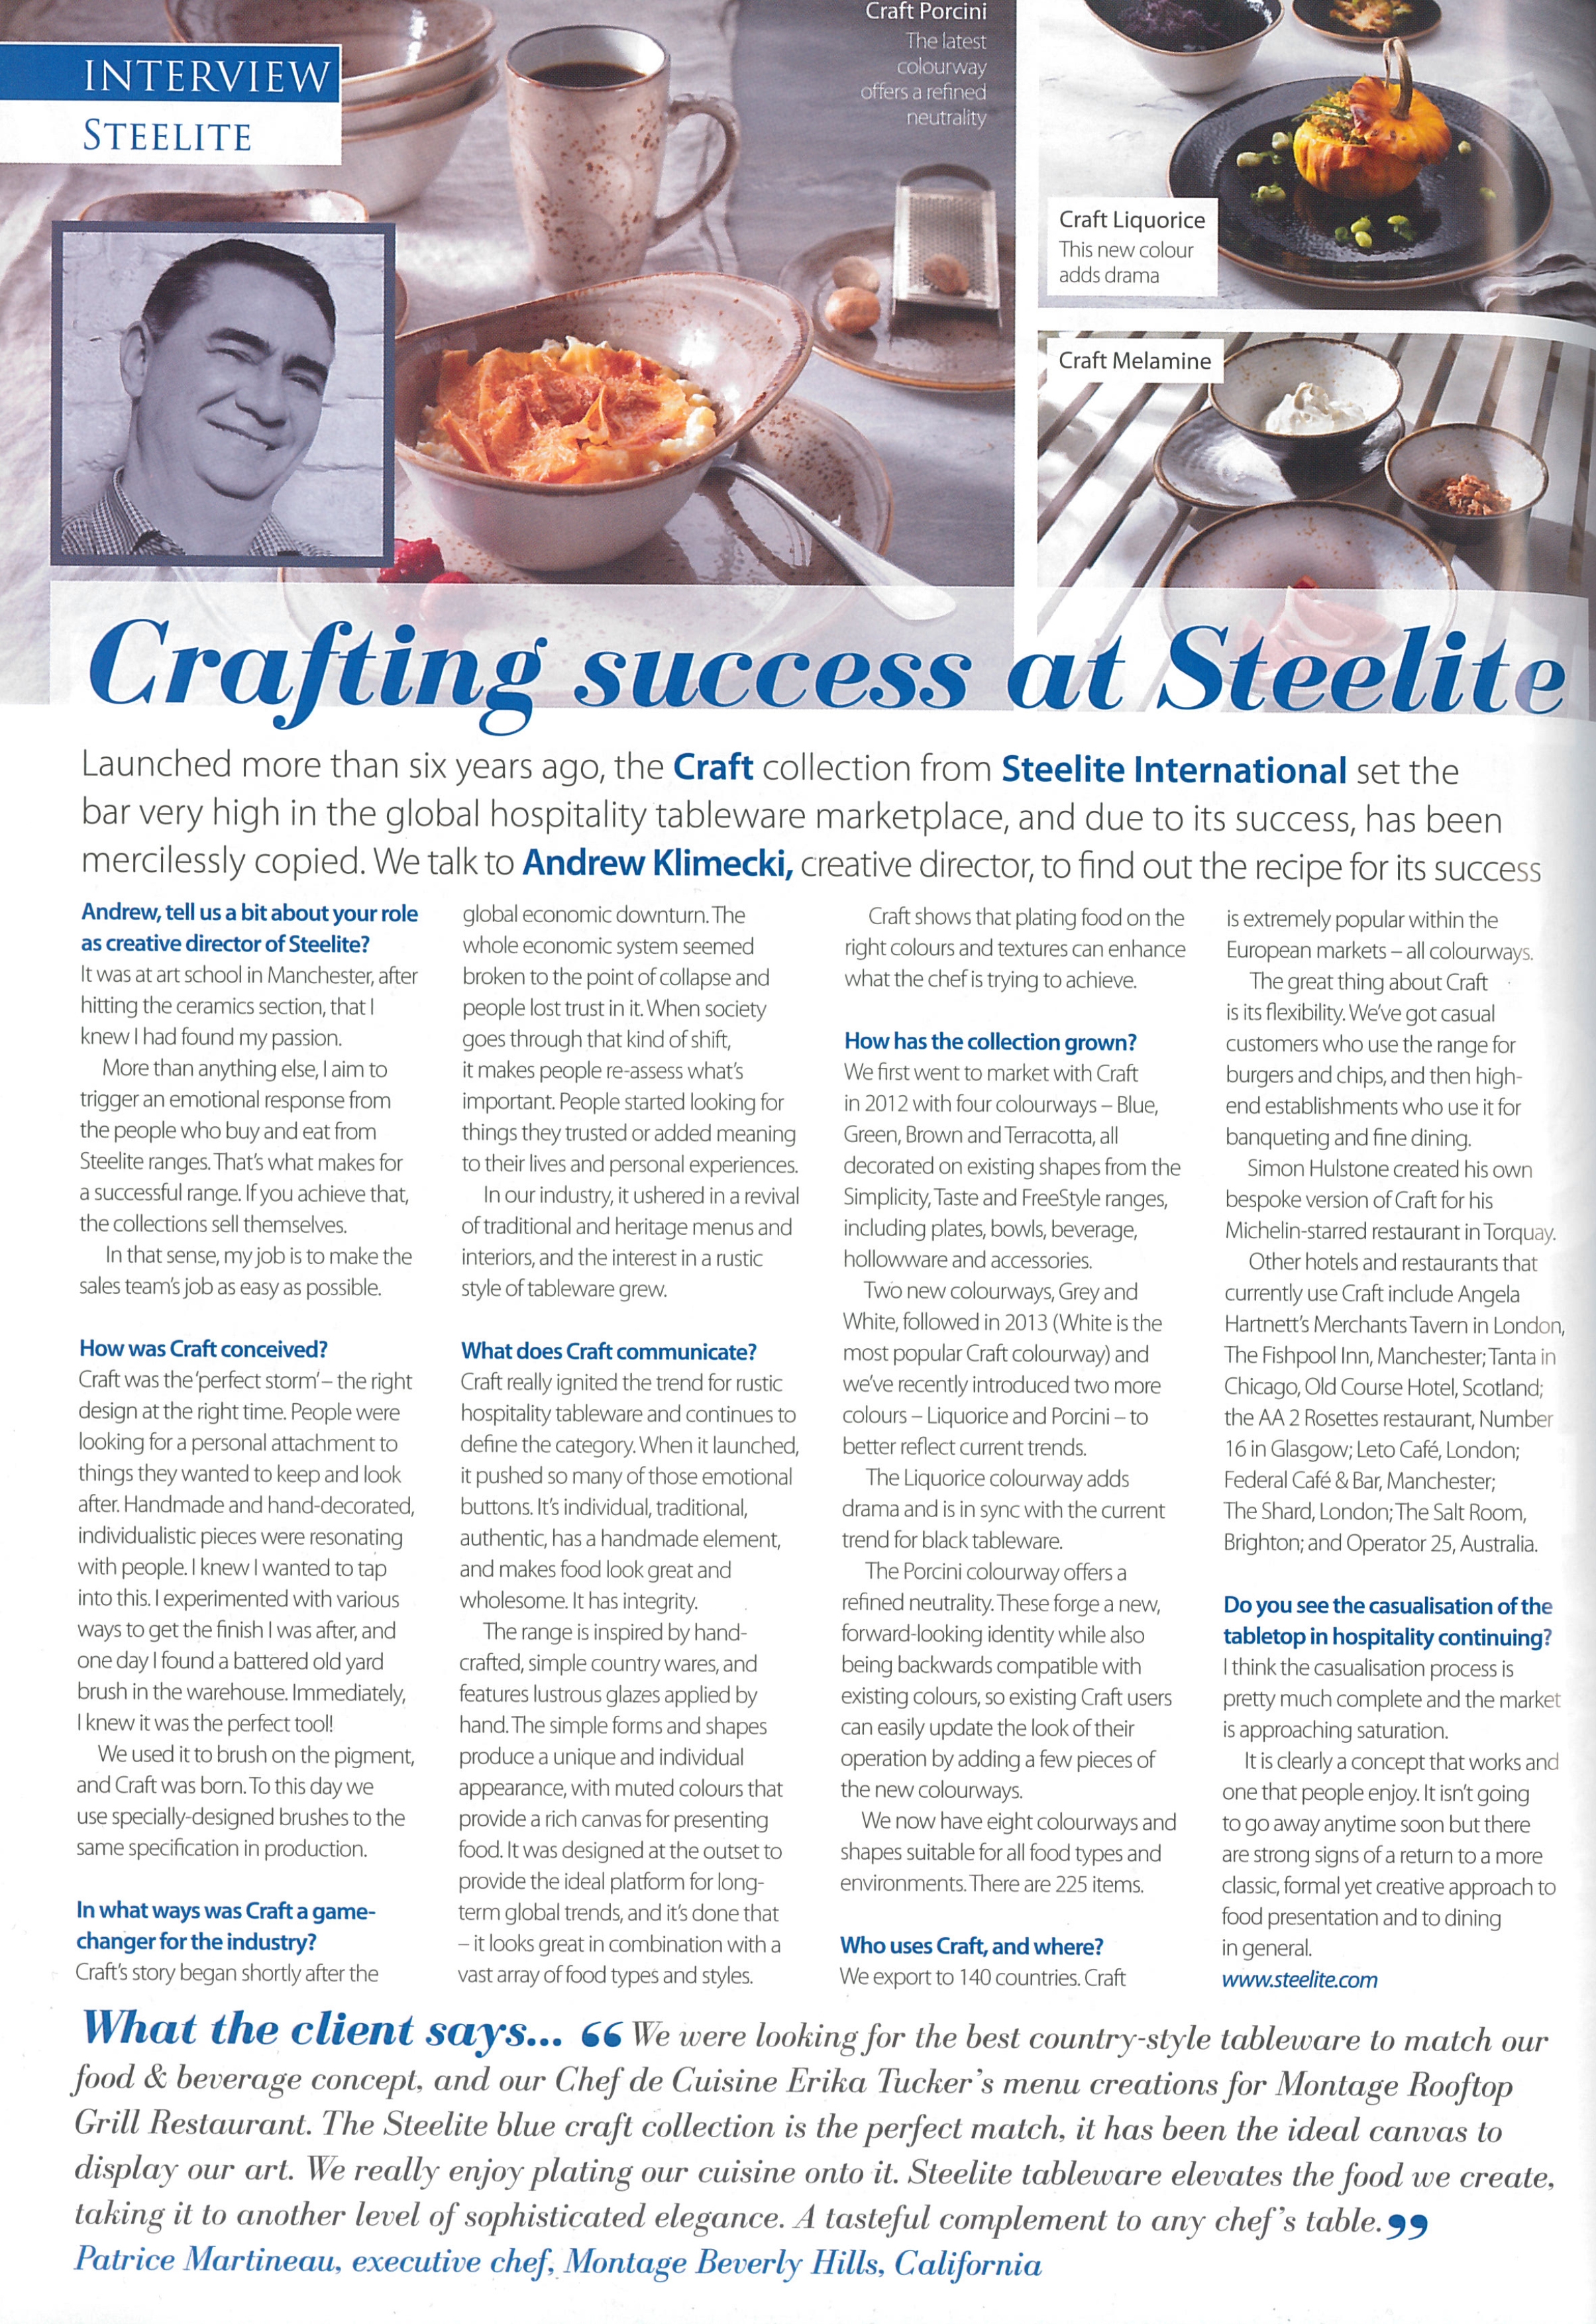 Crafting Success at Steelite